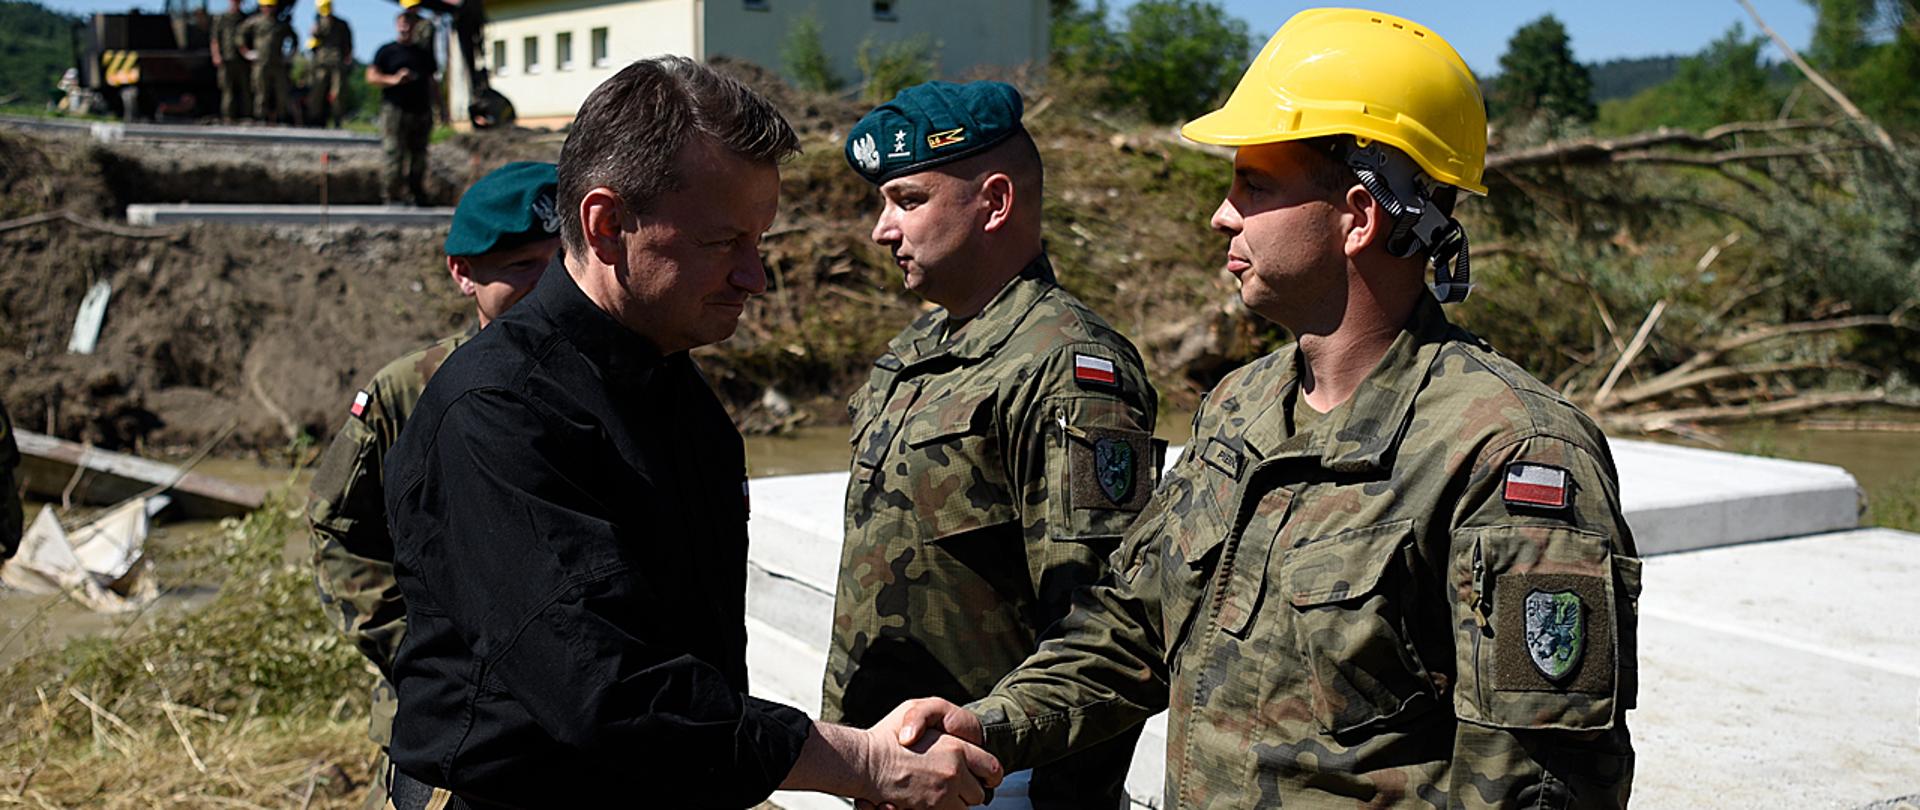 W niedzielę, 5 lipca szef MON spotkał się w Hucie Brzuskiej oraz Hadlach Szklarskich z żołnierzami, którzy od kilku dni pomagają mieszkańcom tych regionów w odbudowie zniszczonej przez ulewy infrastruktury drogowej i mostowej. W regionie prace prowadzą żołnierze 16 Batalionu Saperów z Niska oraz żołnierze 3 Podkarpackiej Brygady Obrony Terytorialnej. 